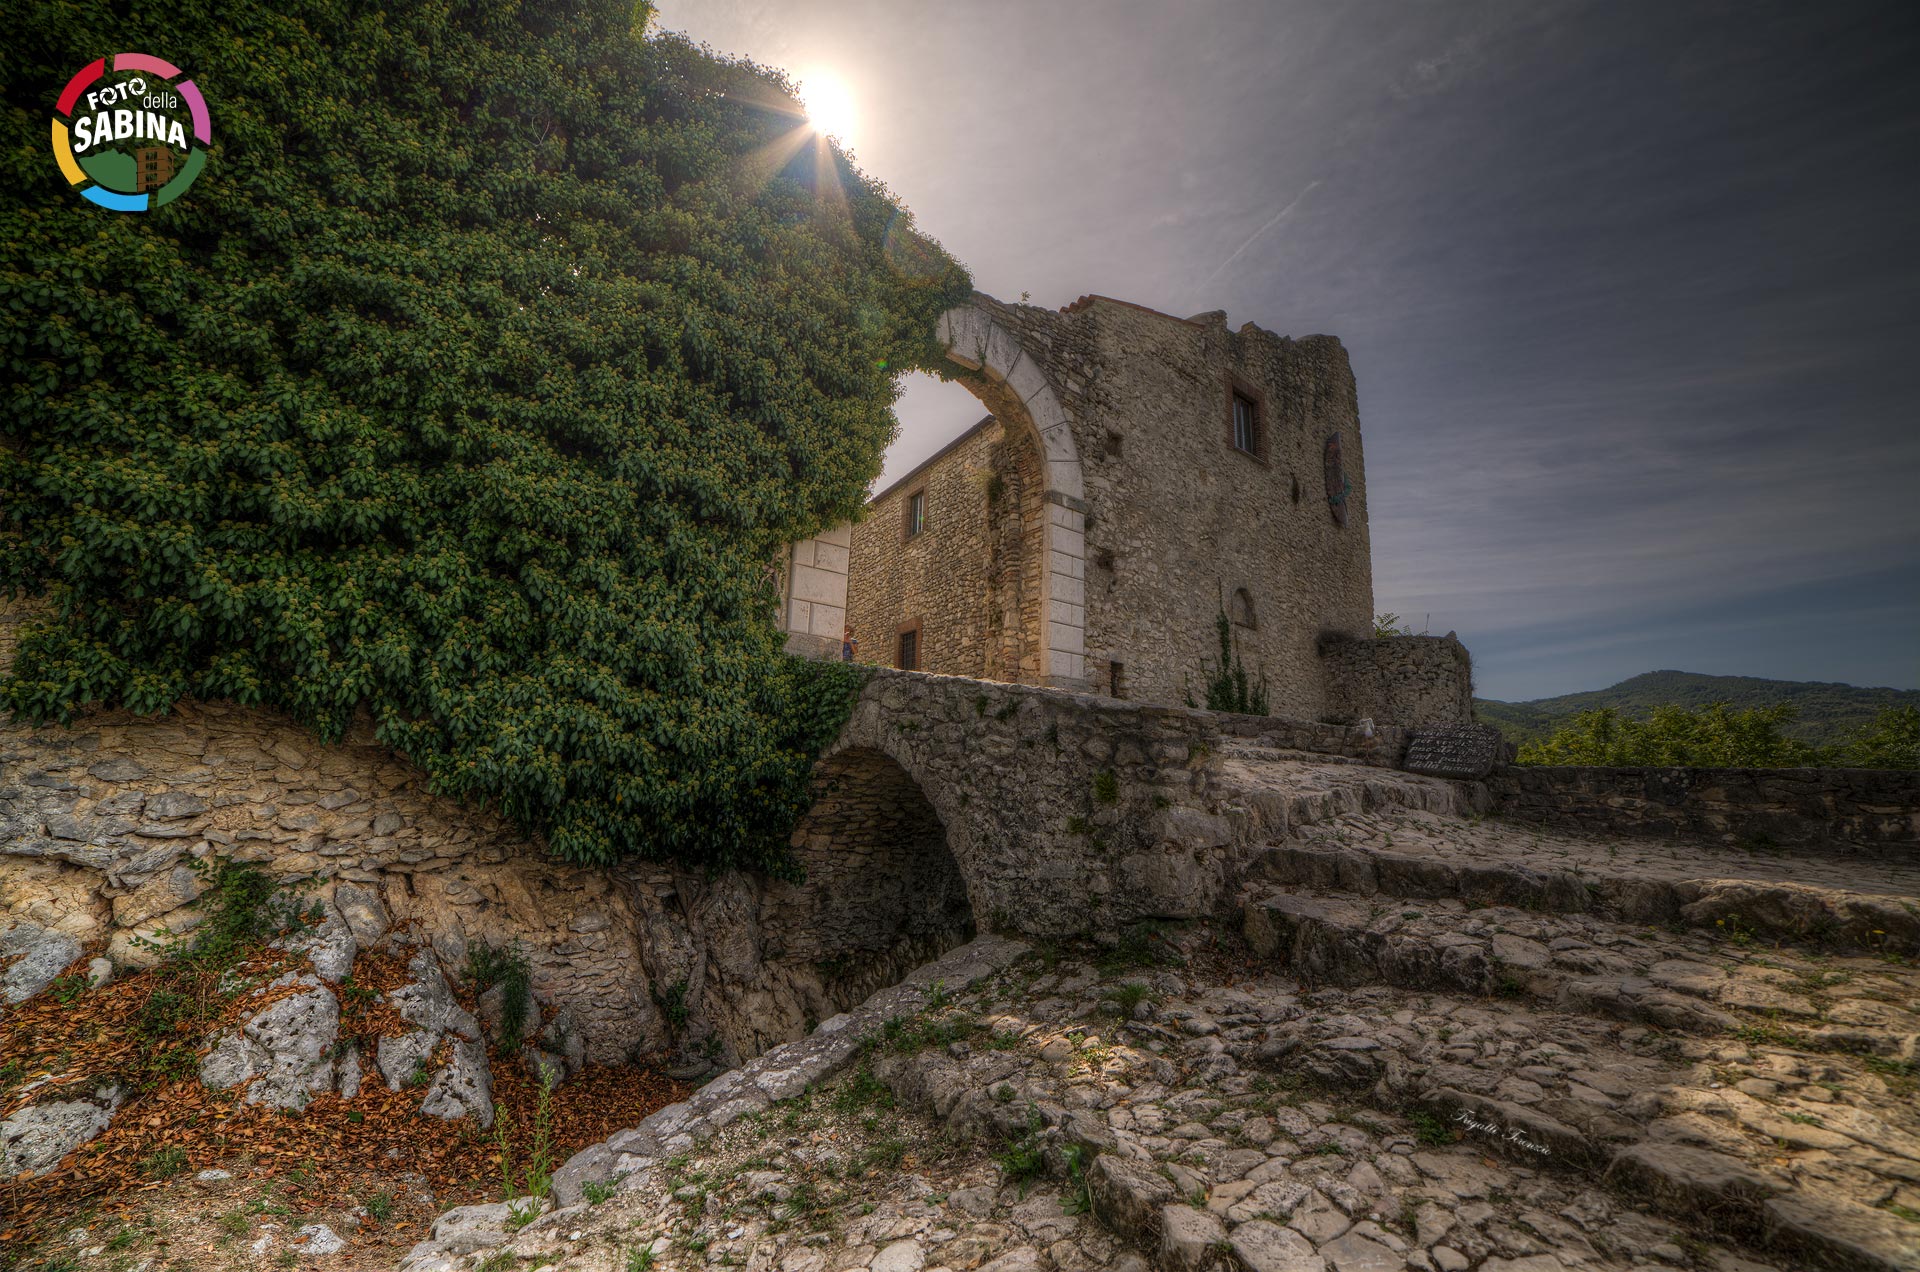 FOTO DELLA SABINA | Castel di Tora - Terenzio Frigatti